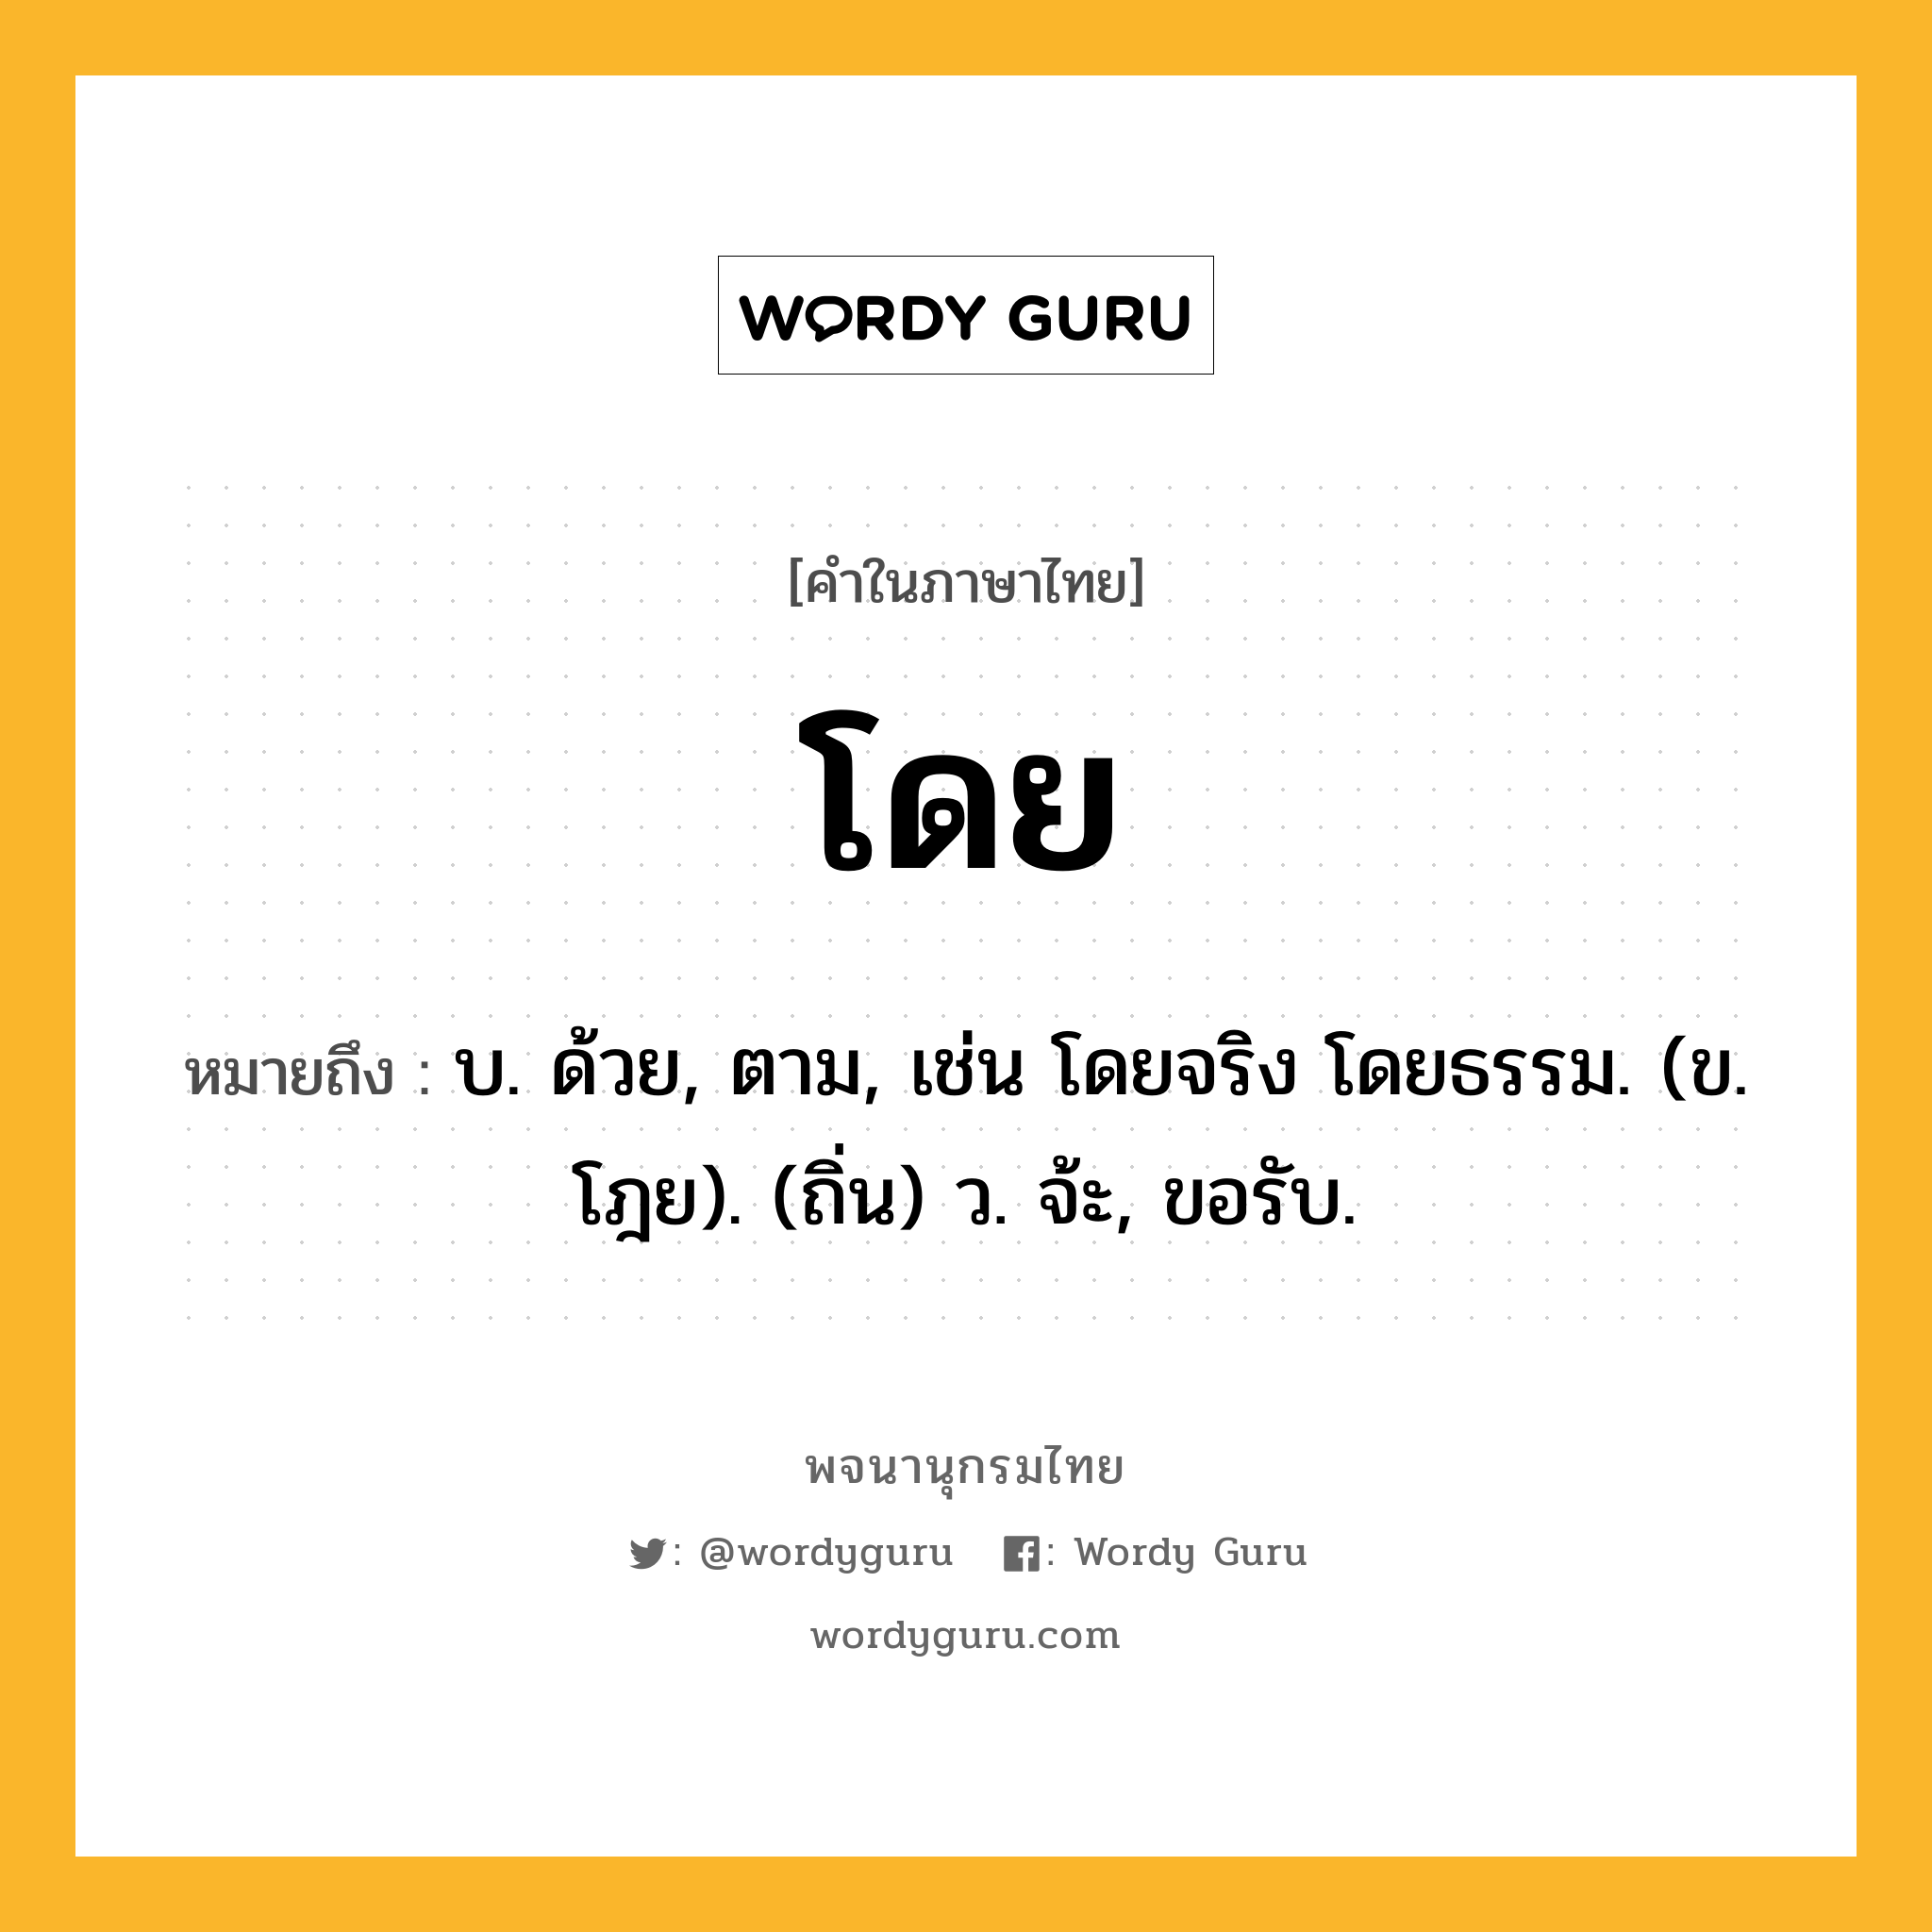 โดย หมายถึงอะไร?, คำในภาษาไทย โดย หมายถึง บ. ด้วย, ตาม, เช่น โดยจริง โดยธรรม. (ข. โฎย). (ถิ่น) ว. จ้ะ, ขอรับ.